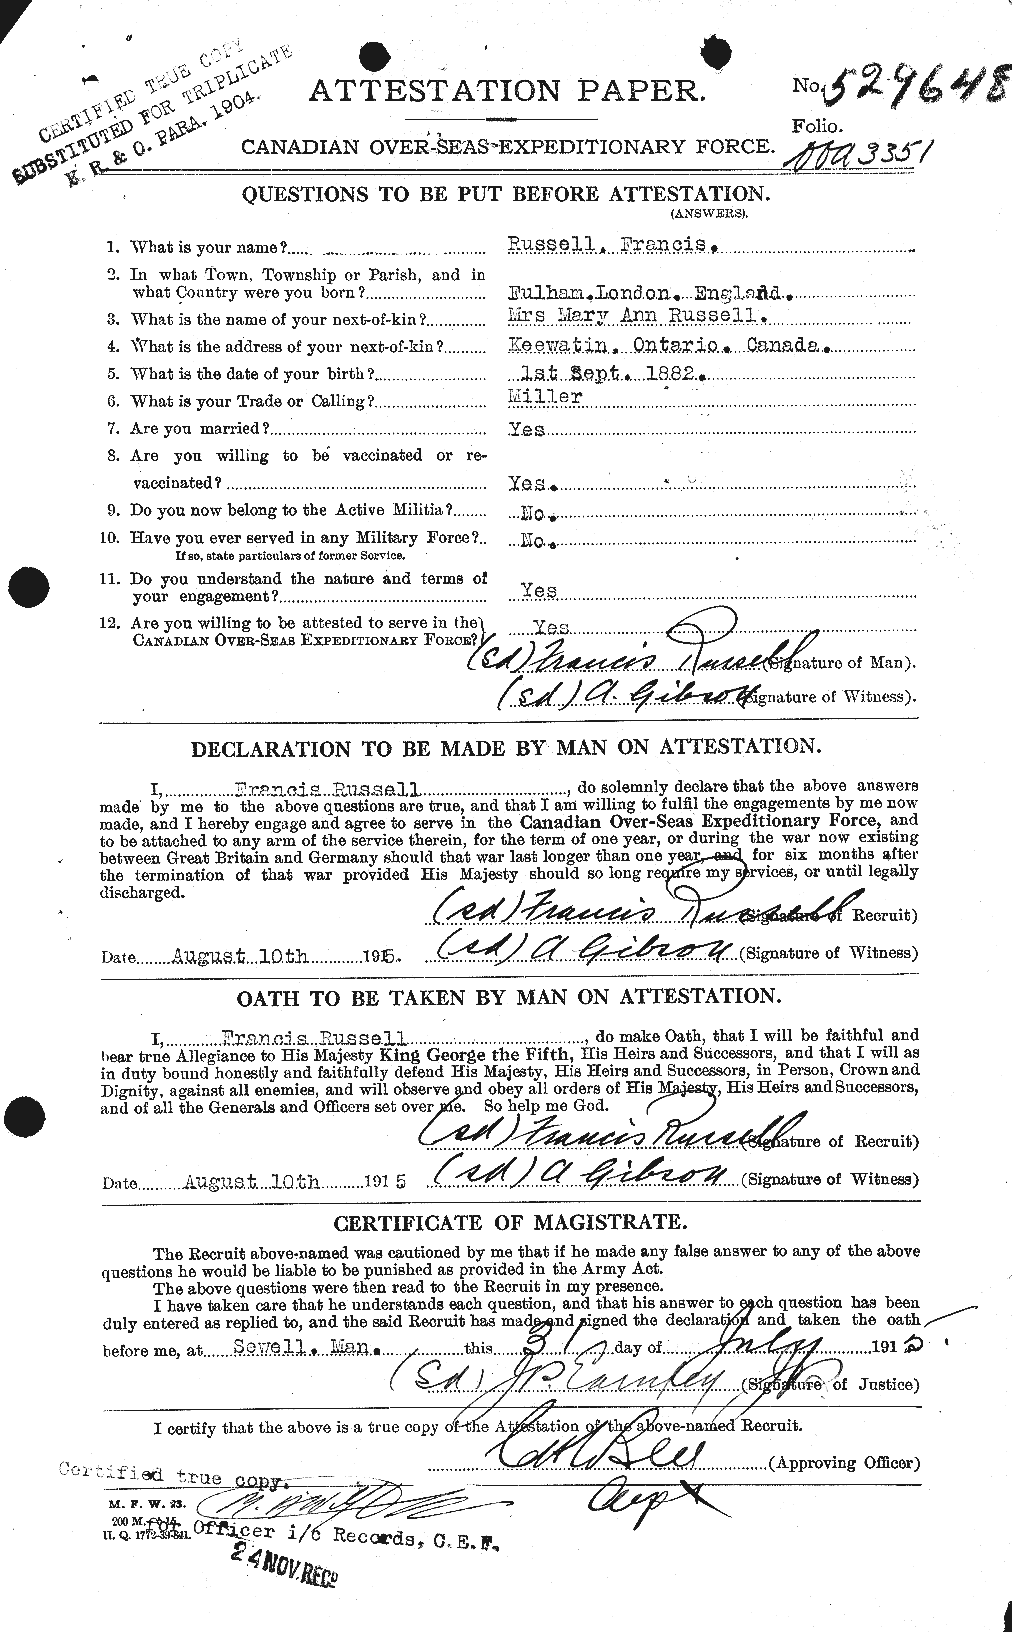 Dossiers du Personnel de la Première Guerre mondiale - CEC 618866a